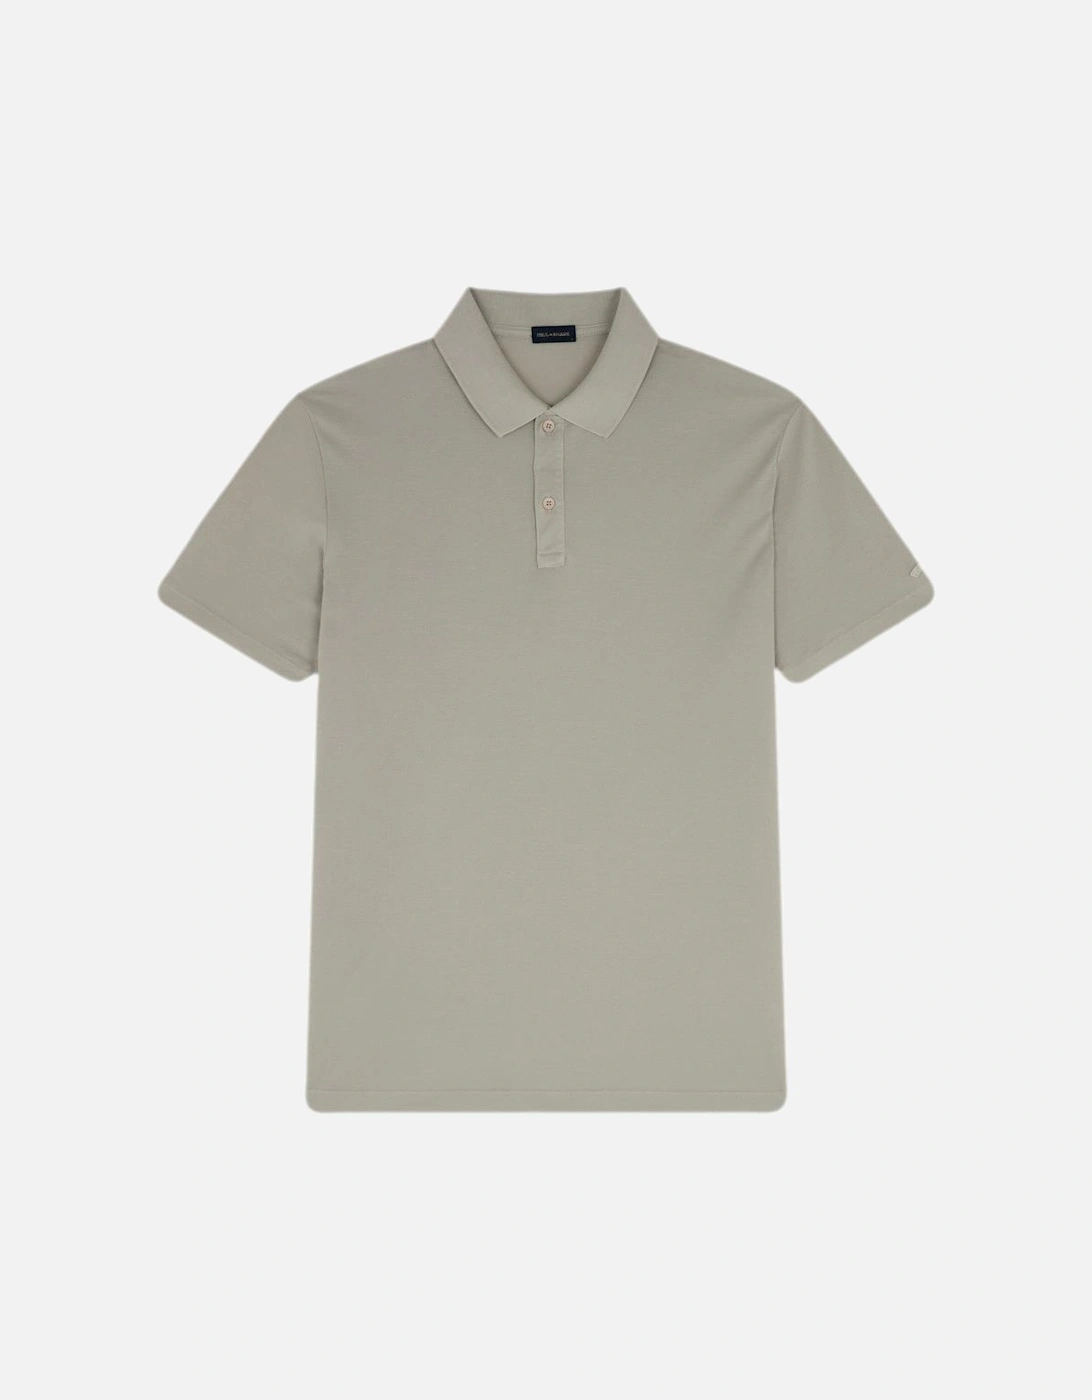 GD Pique Cotton Polo Shirt 029 Almond, 4 of 3